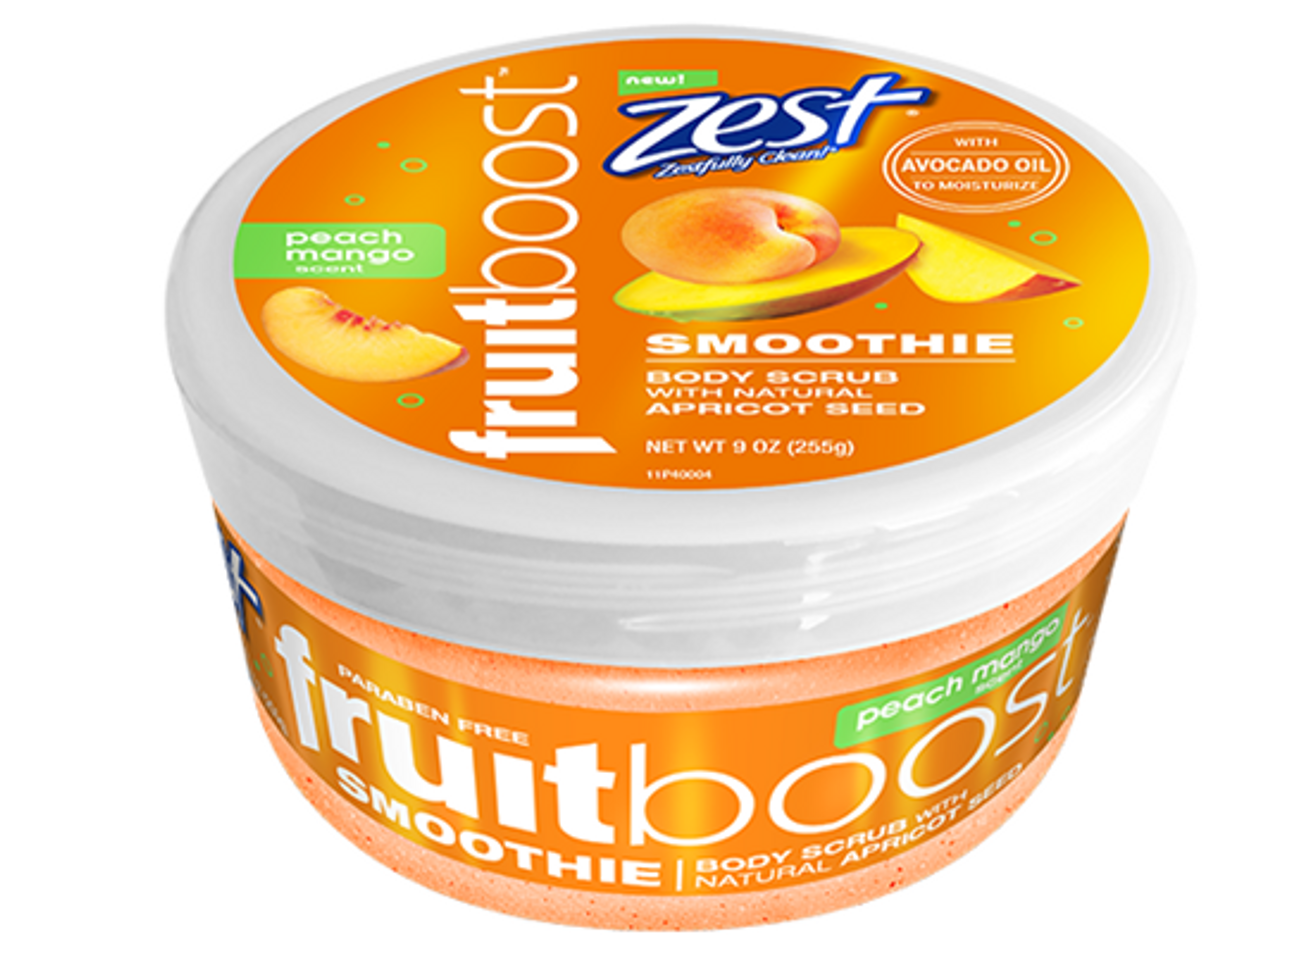 Tẩy tế bào chết Zest Fruitboost Smoothie Body Scrub Peach Mango cho làn da trên cơ thể